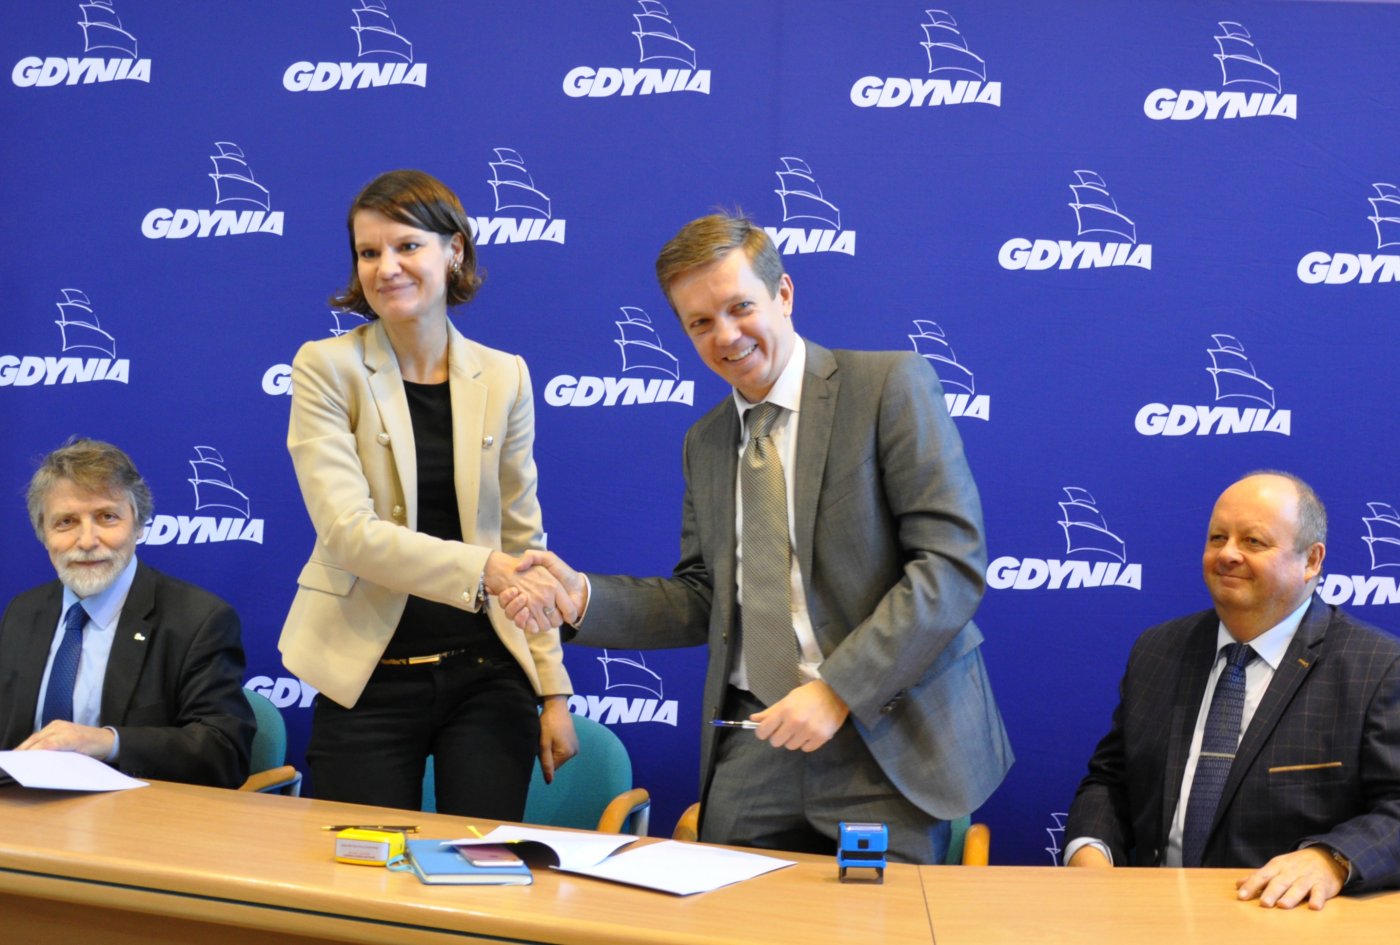 Grupa Zakupowa Gaz pod przewodnictwem Gdyni podpisała dziś umowę na kompleksową dostawę gazu ziemnego na rok 2018